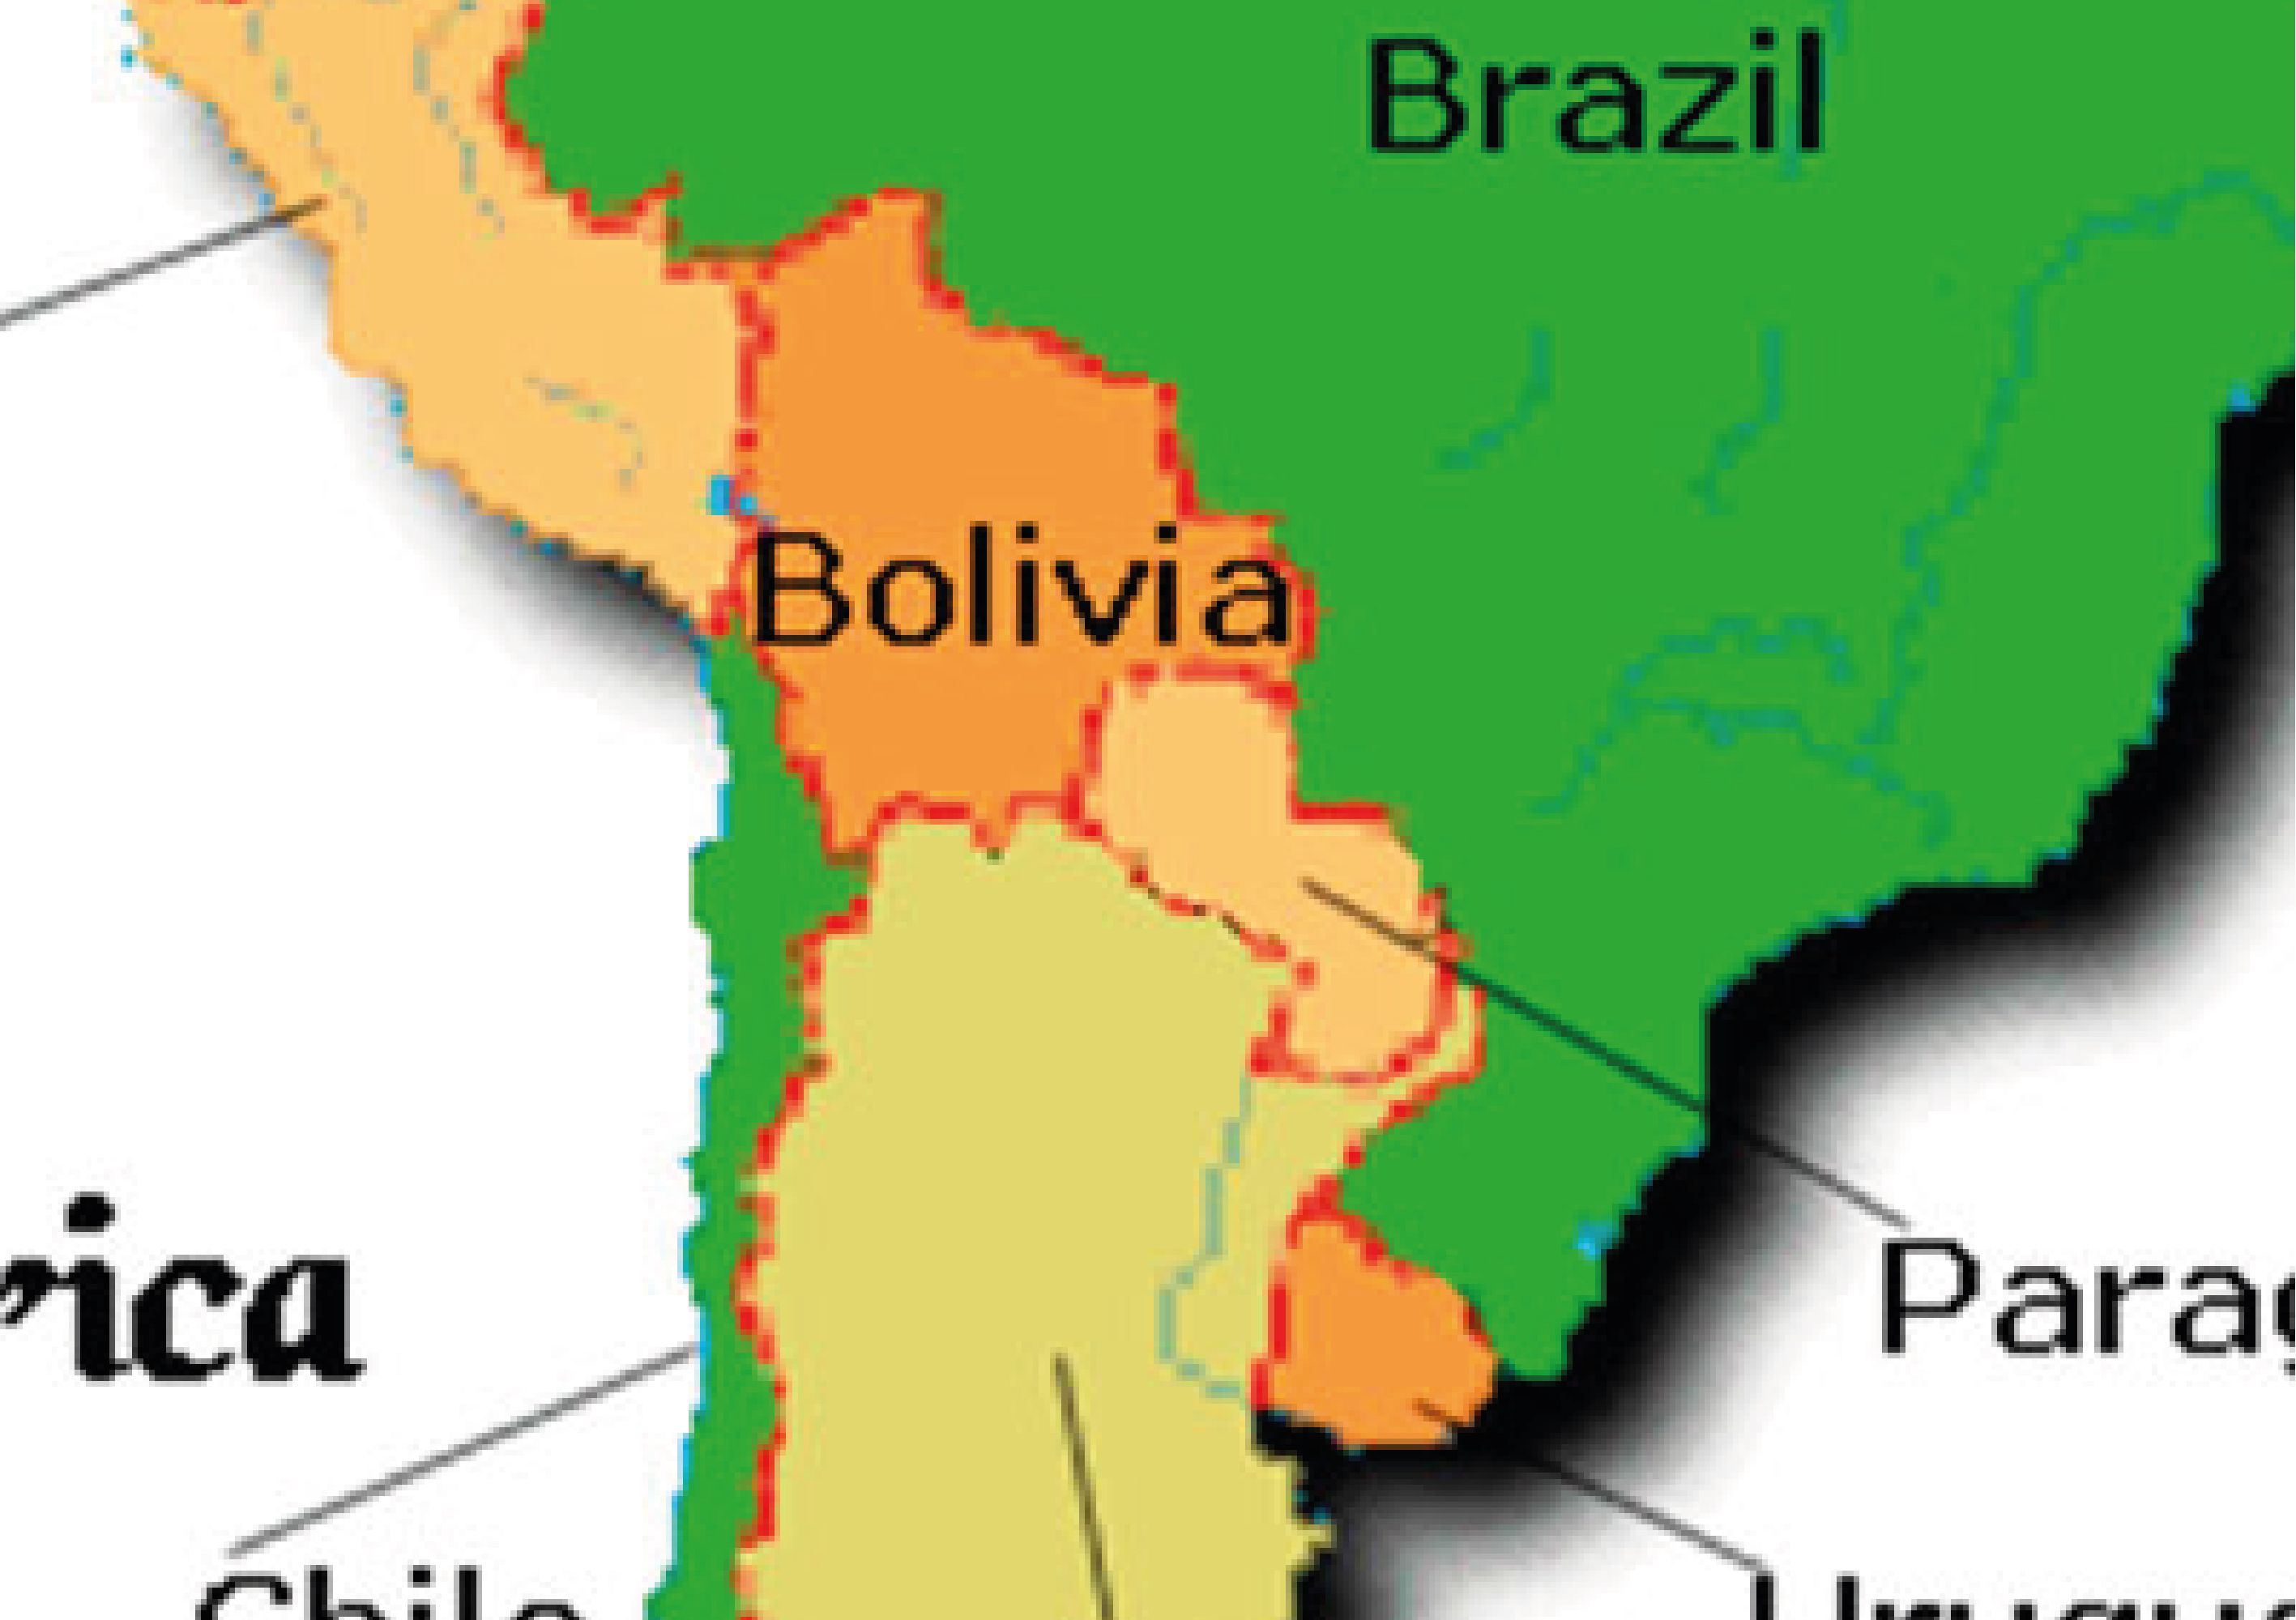 Efectos spill over del conflicto colombiano sobre sus países vecinos